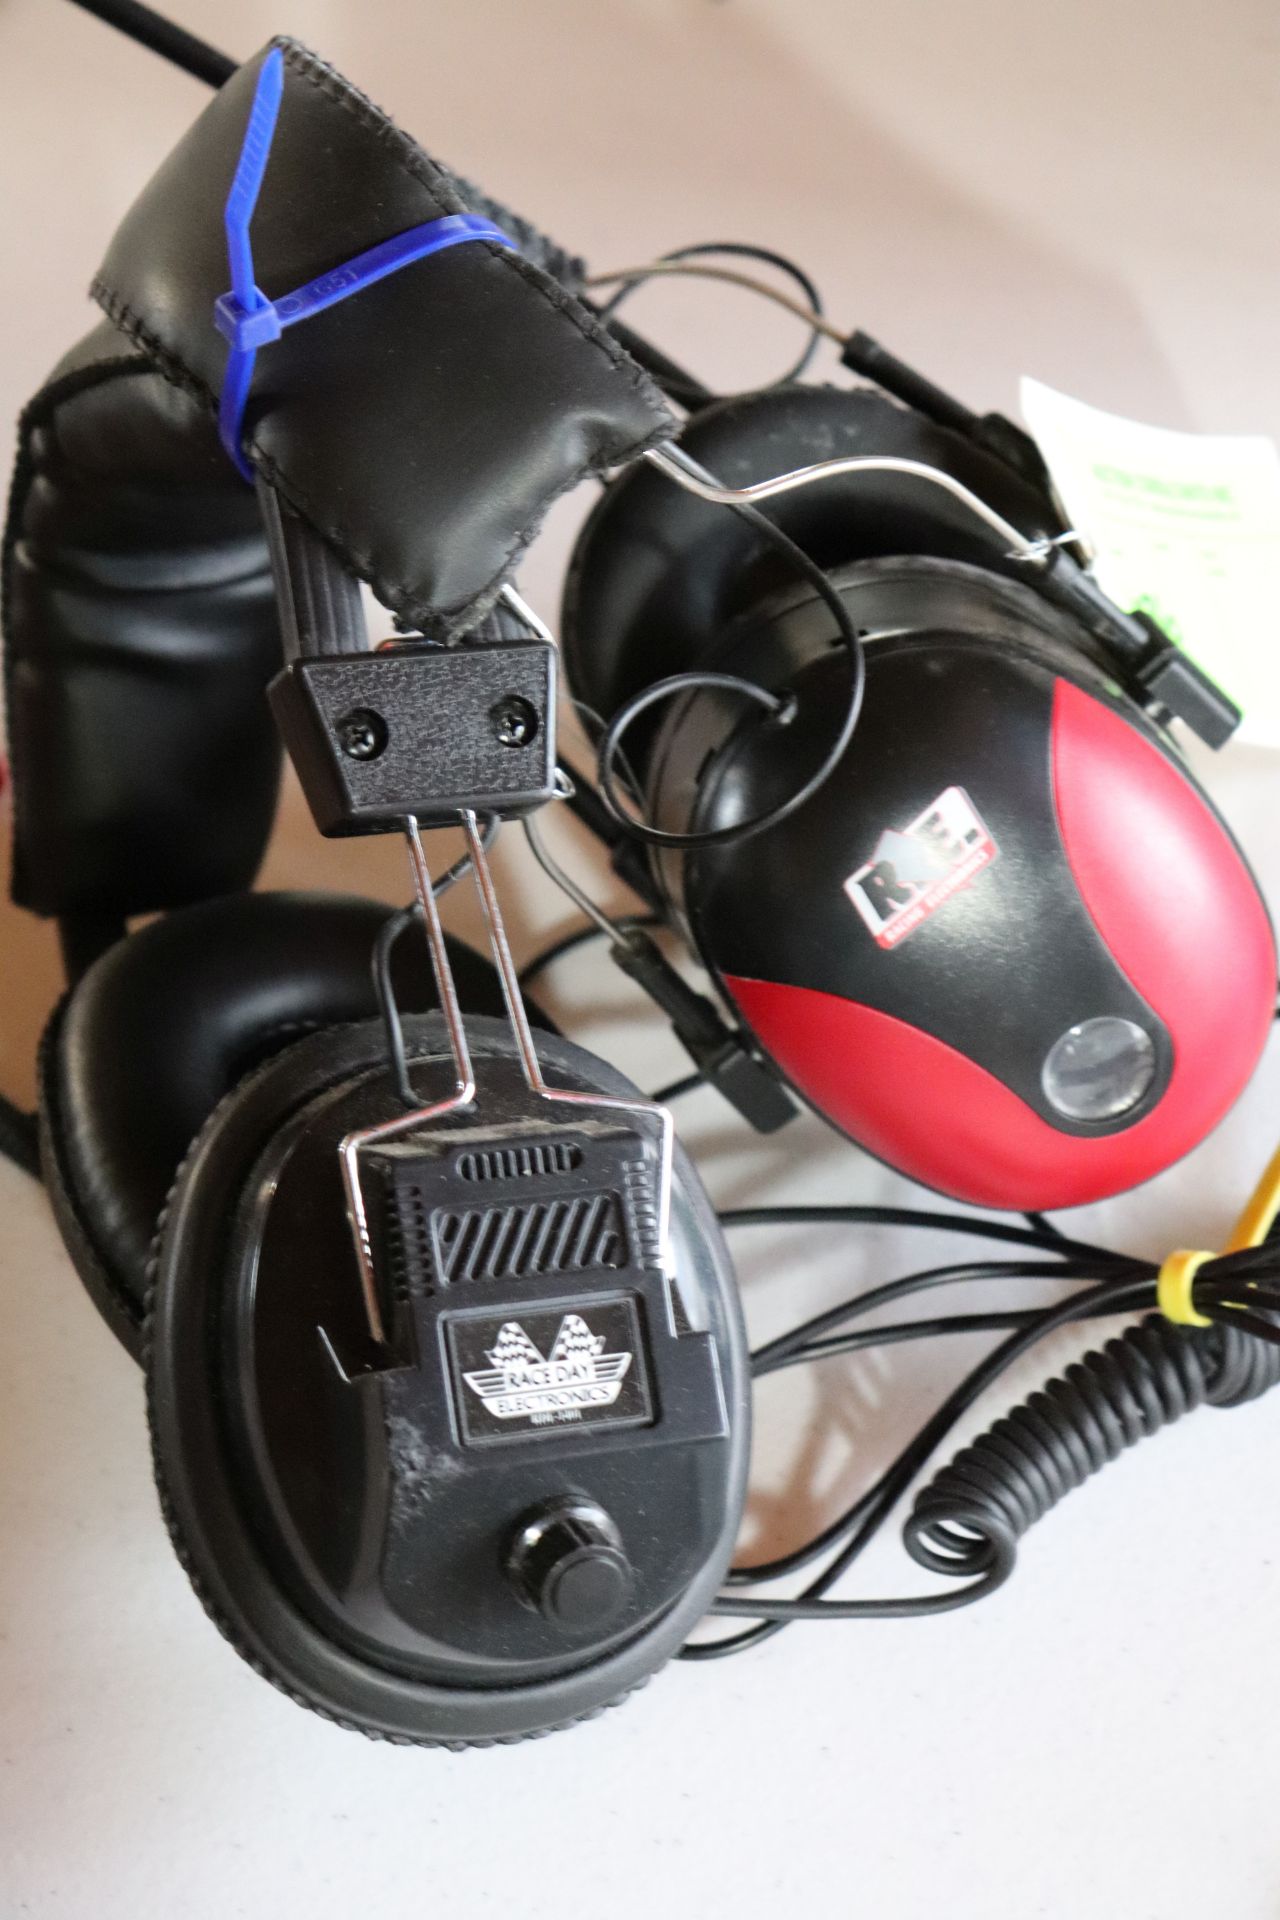 2 headsets. Racing electronics and Raceday electronics